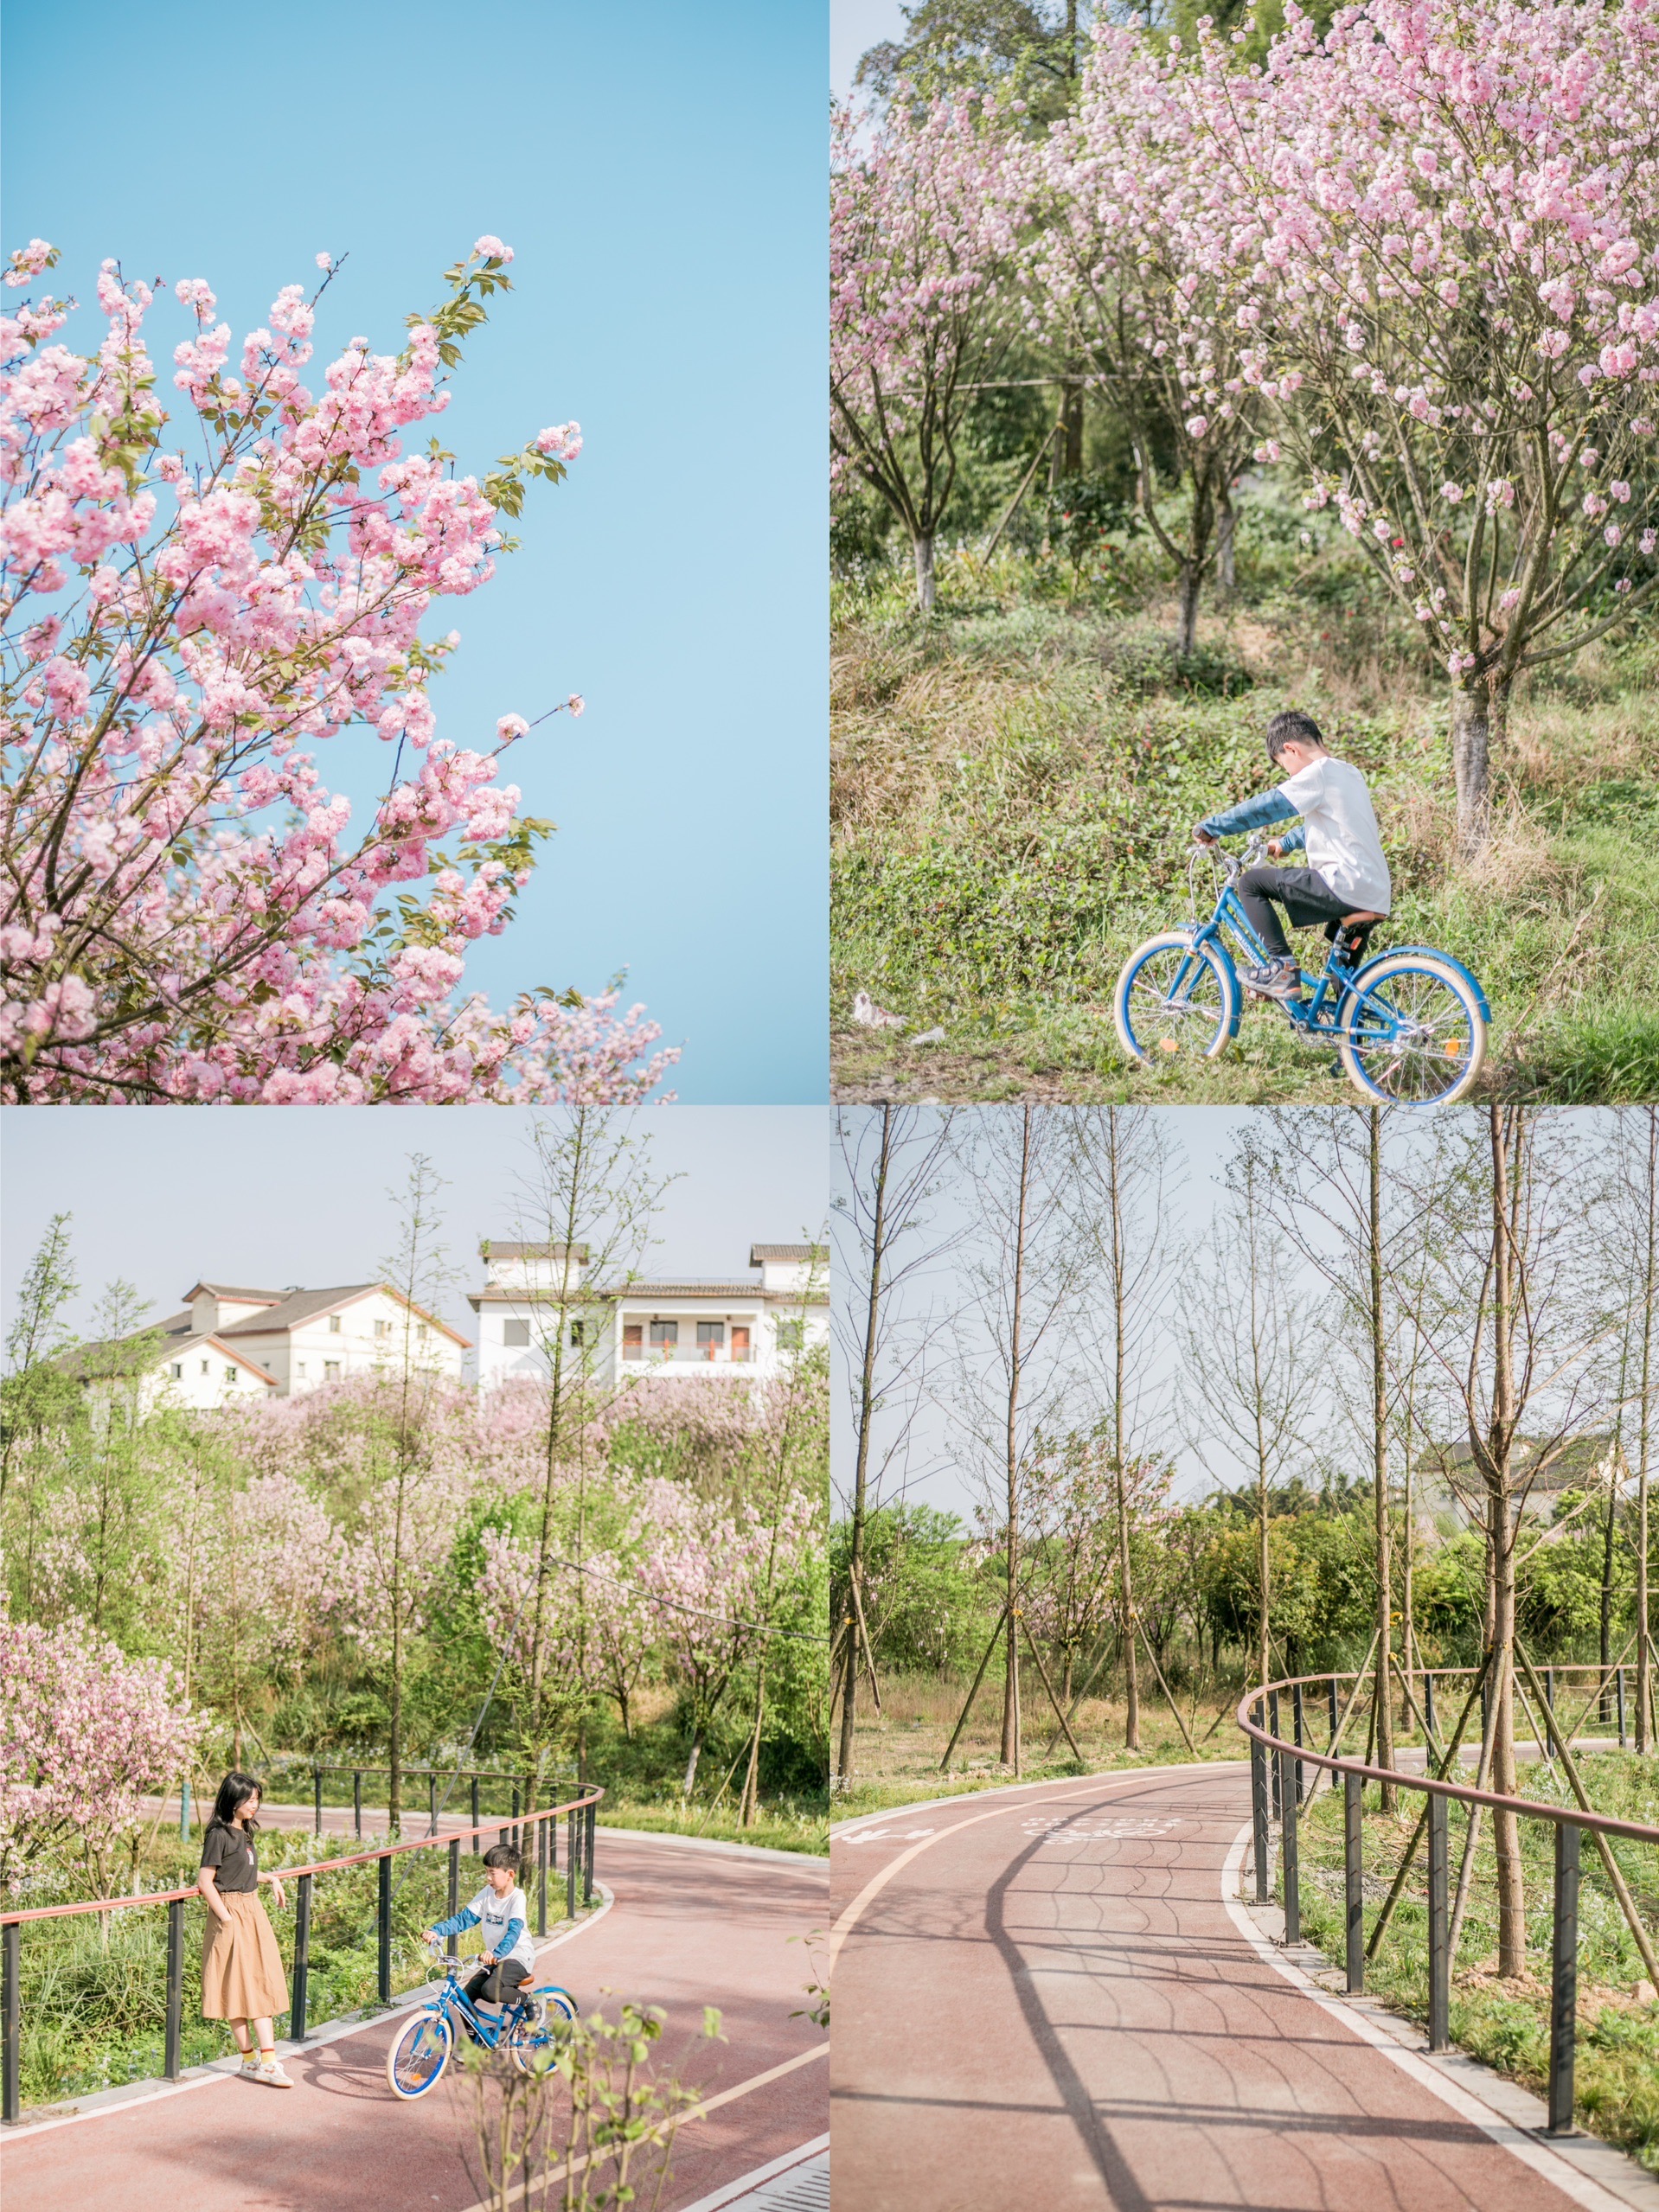 重庆周末亲子游推荐地•这个免费亲子自行车道开满鲜花